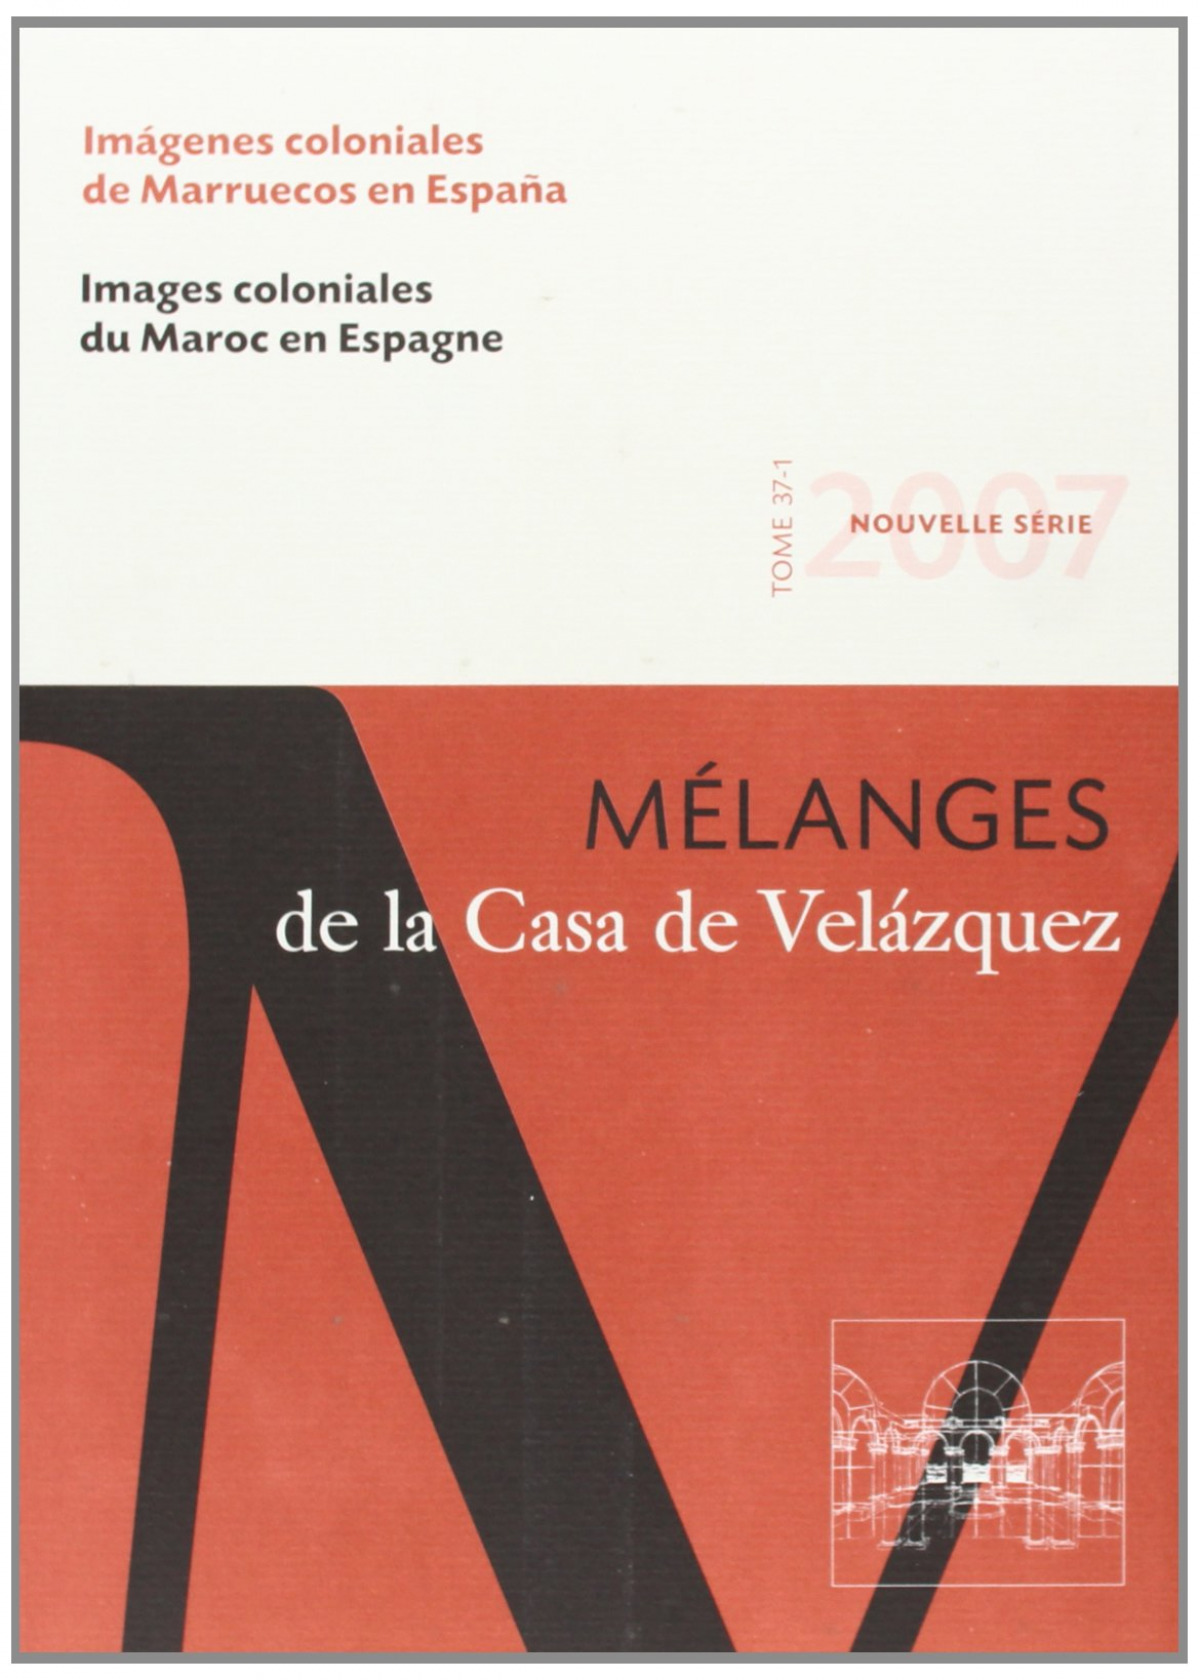 Imágenes coloniales de Marruecos en España - Felipe, Helena de/ Arias Anglés, Enrique